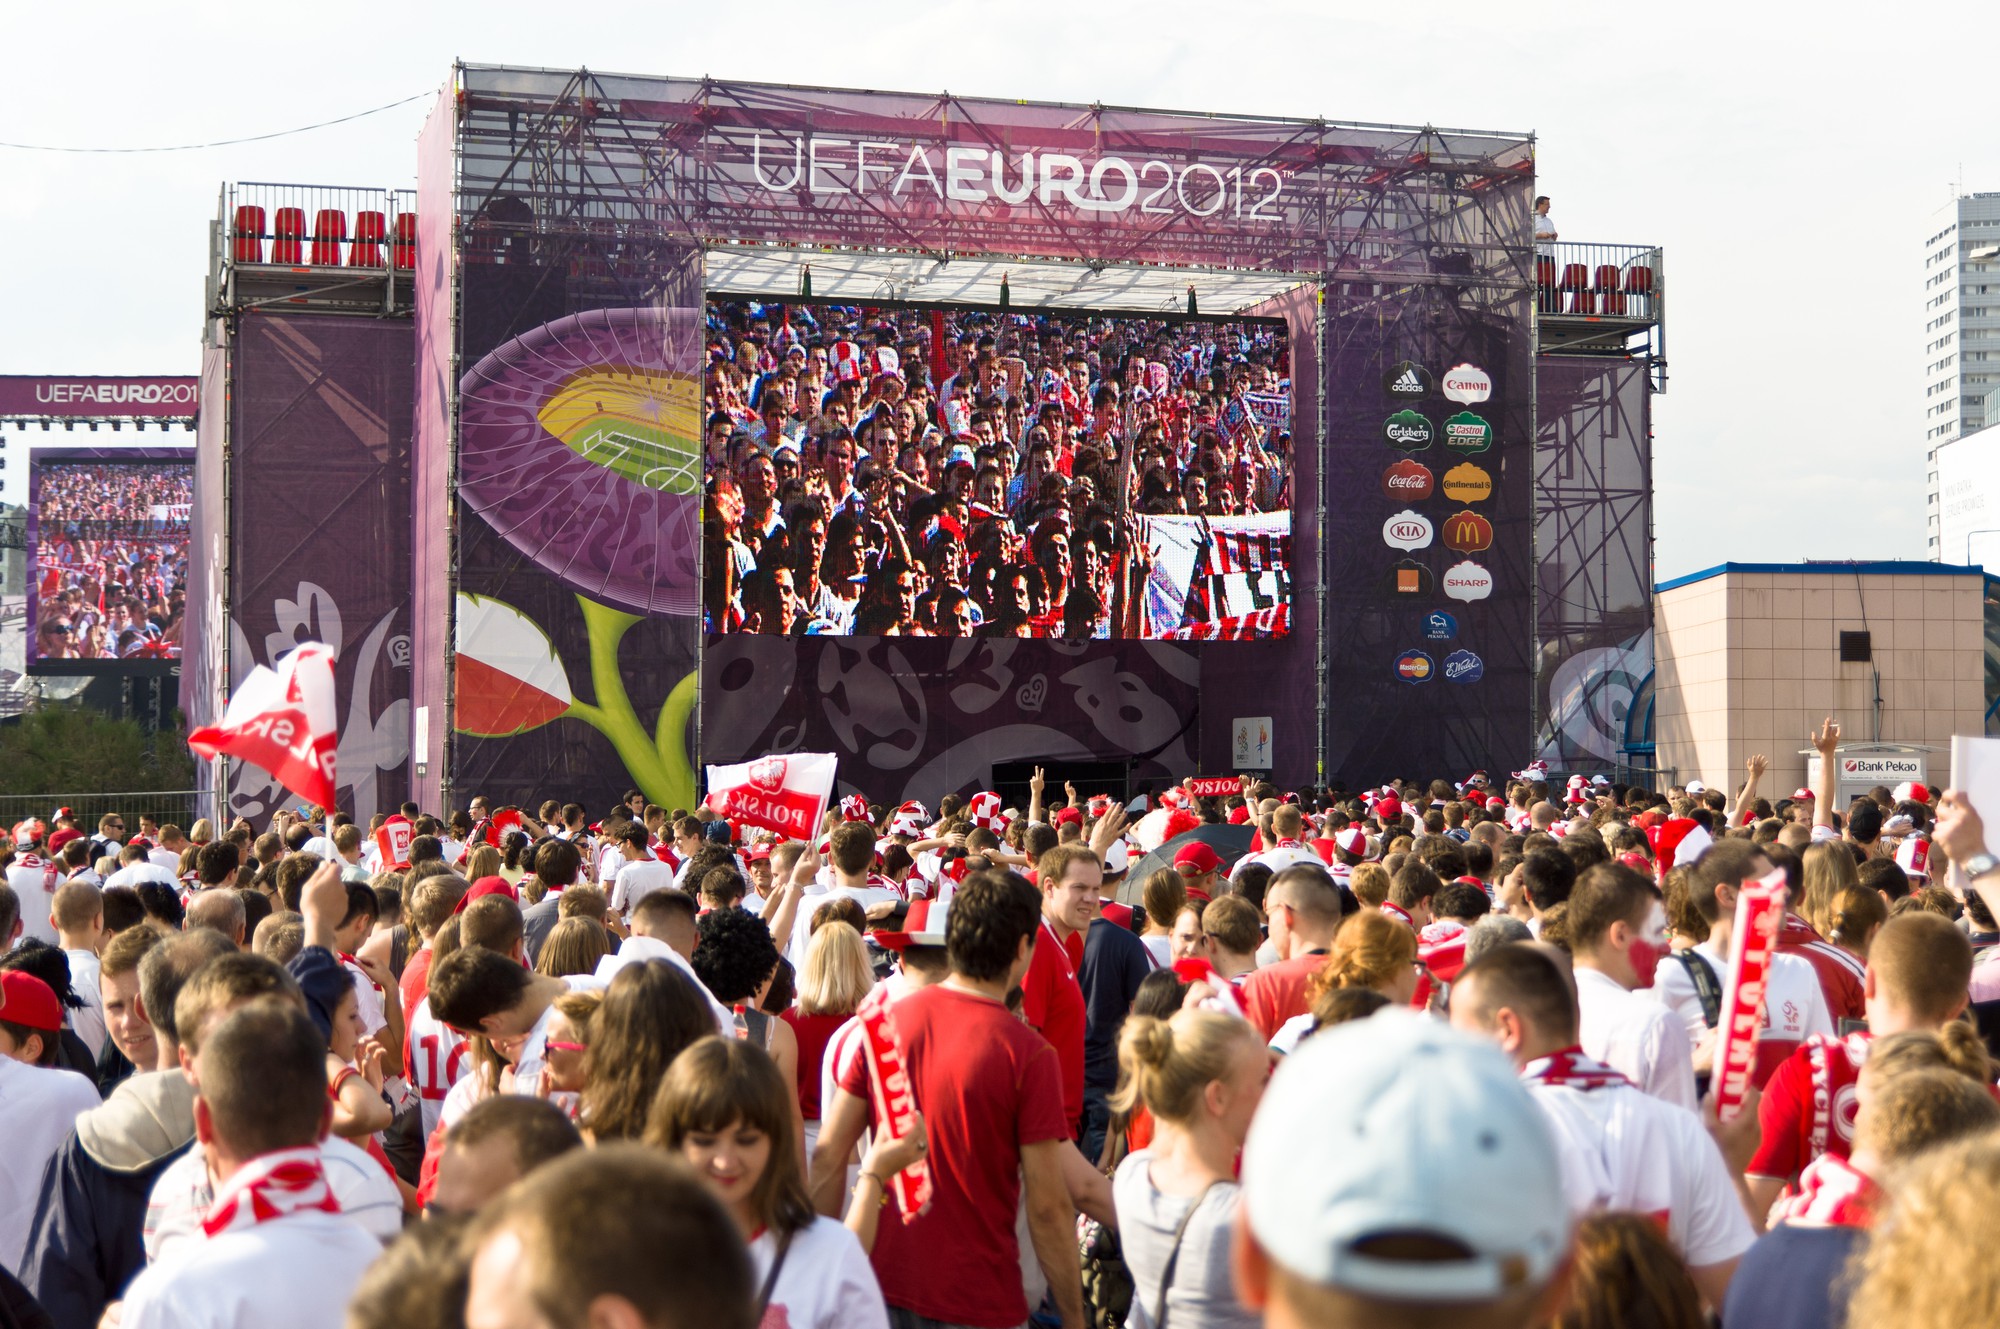 Lo sợ khủng bố, khán giả sẽ bị cấm vào sân ở EURO 2016 